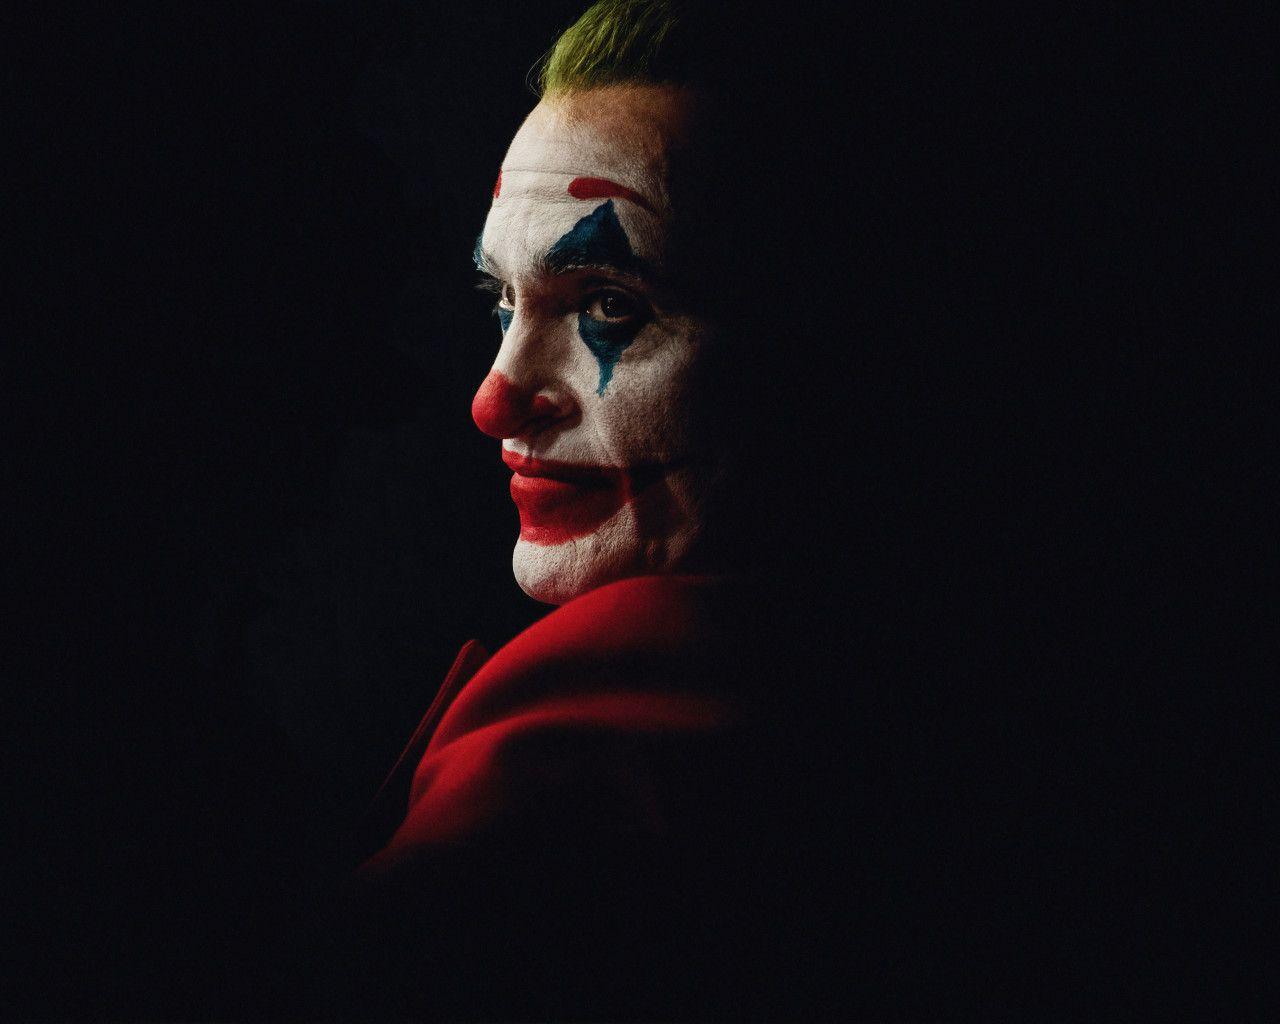 Dark Joker Wallpapers - Top Free Dark Joker Backgrounds ...